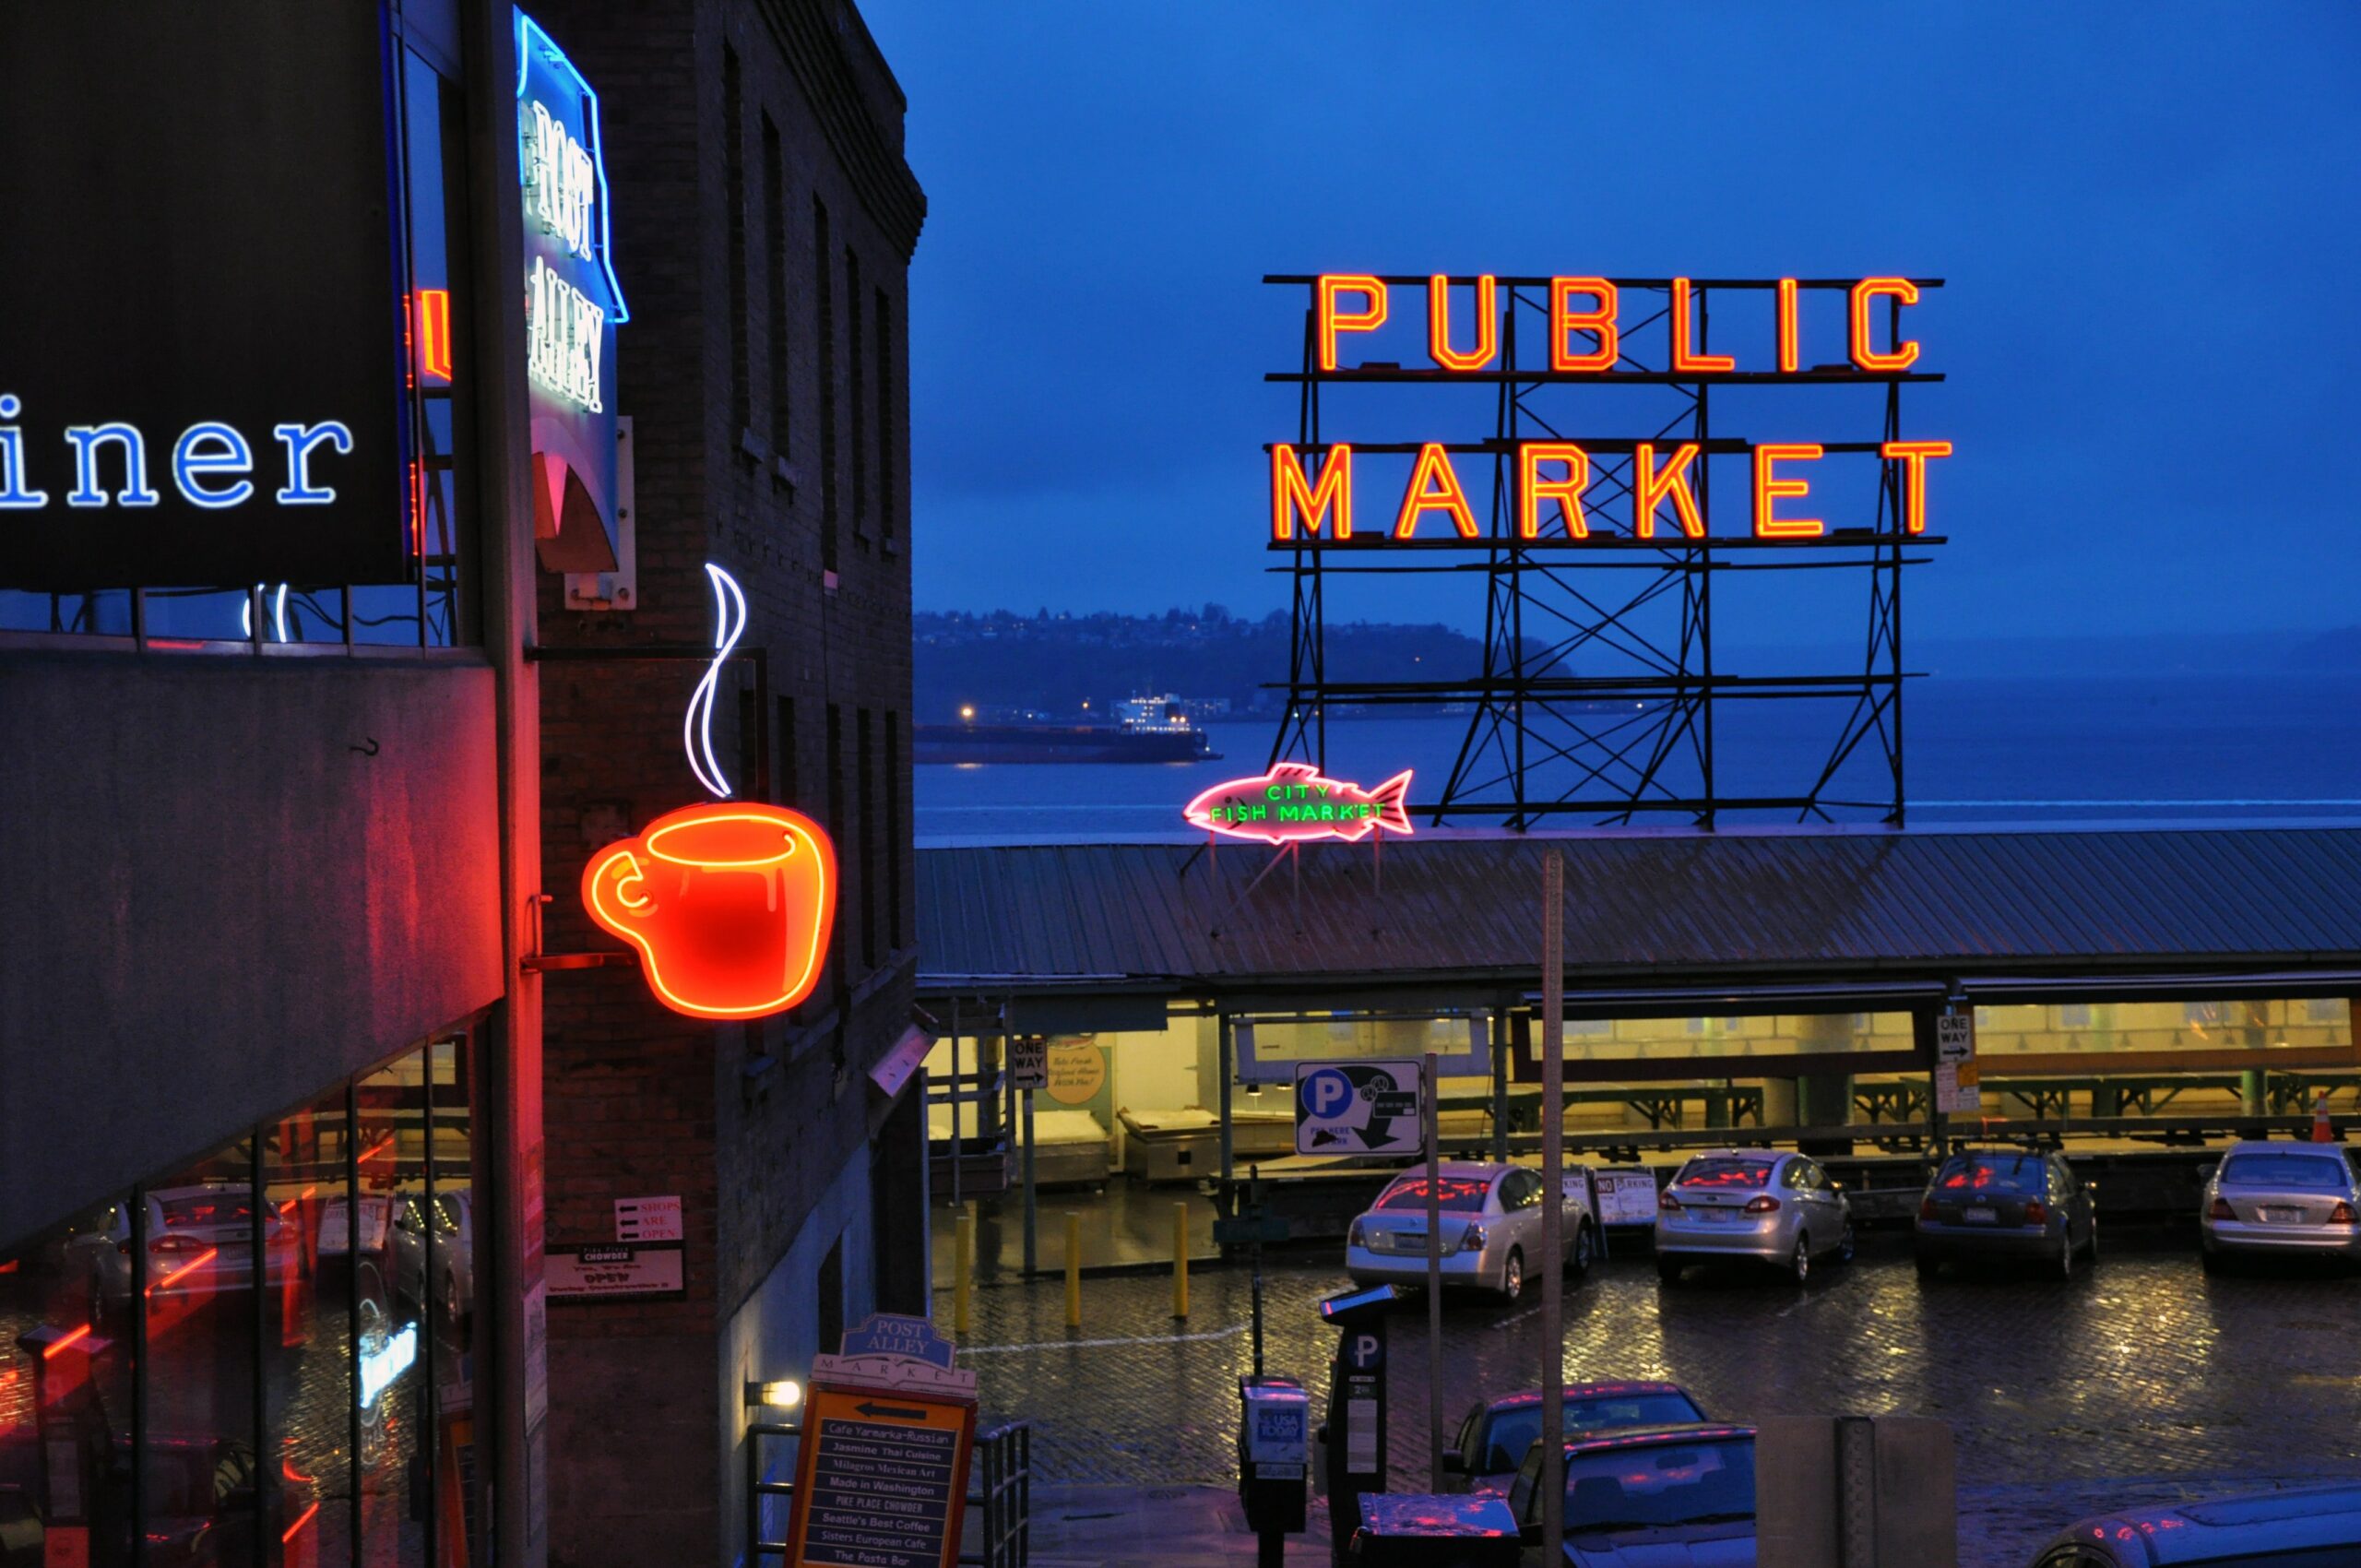 Public market seattle sign in low light